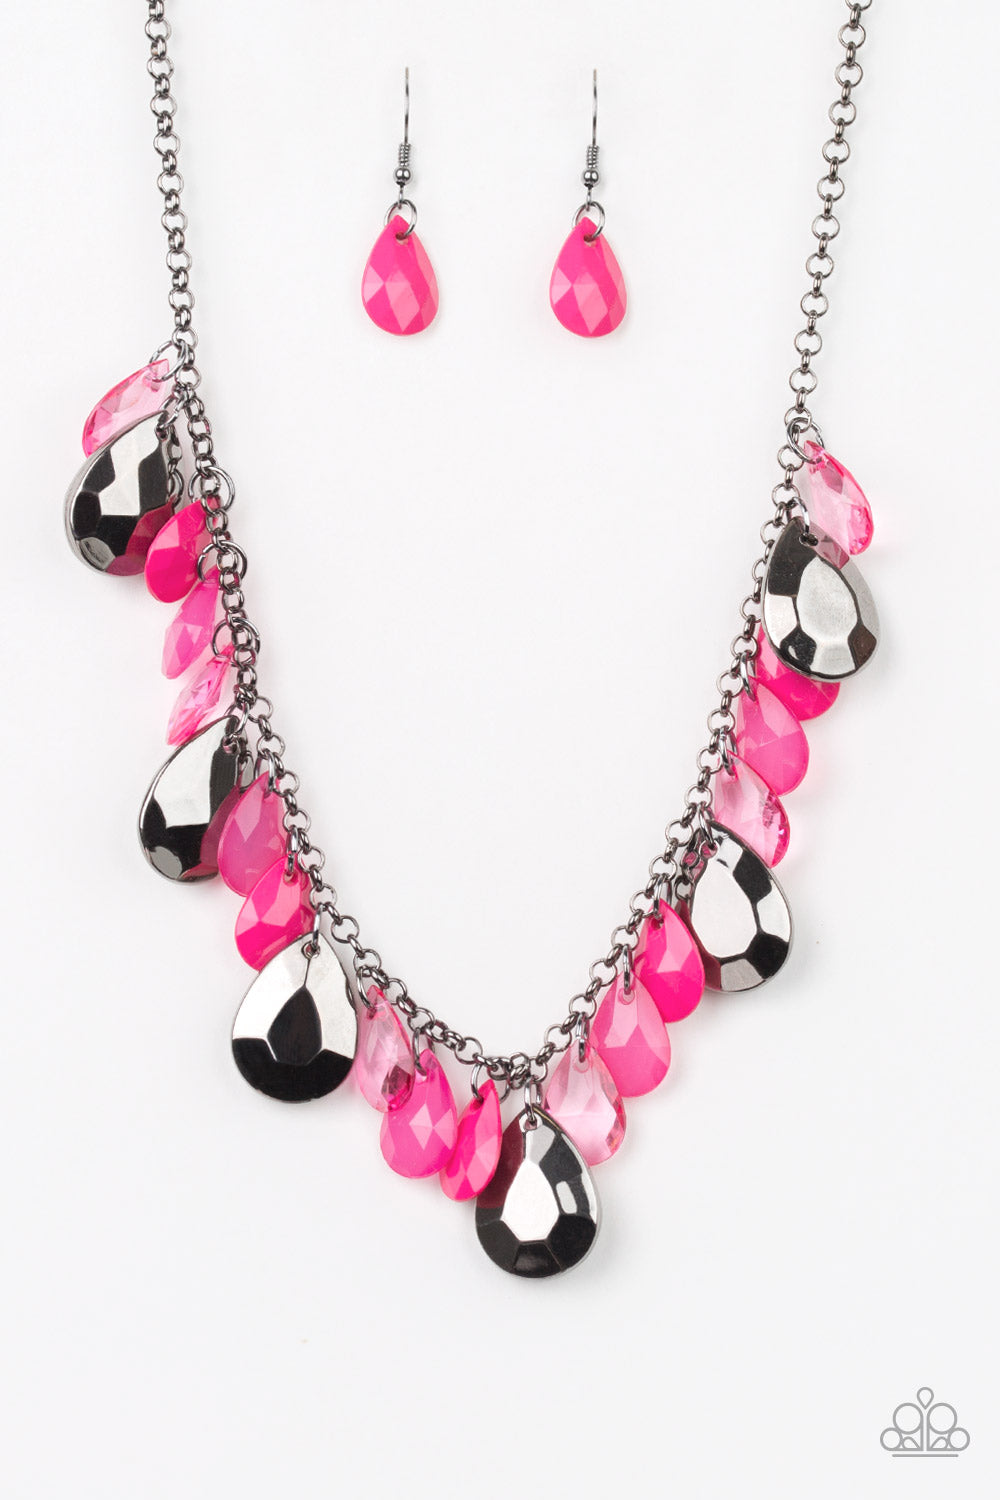 Hurricane Season Pink
Necklace - Daria's Blings N Things